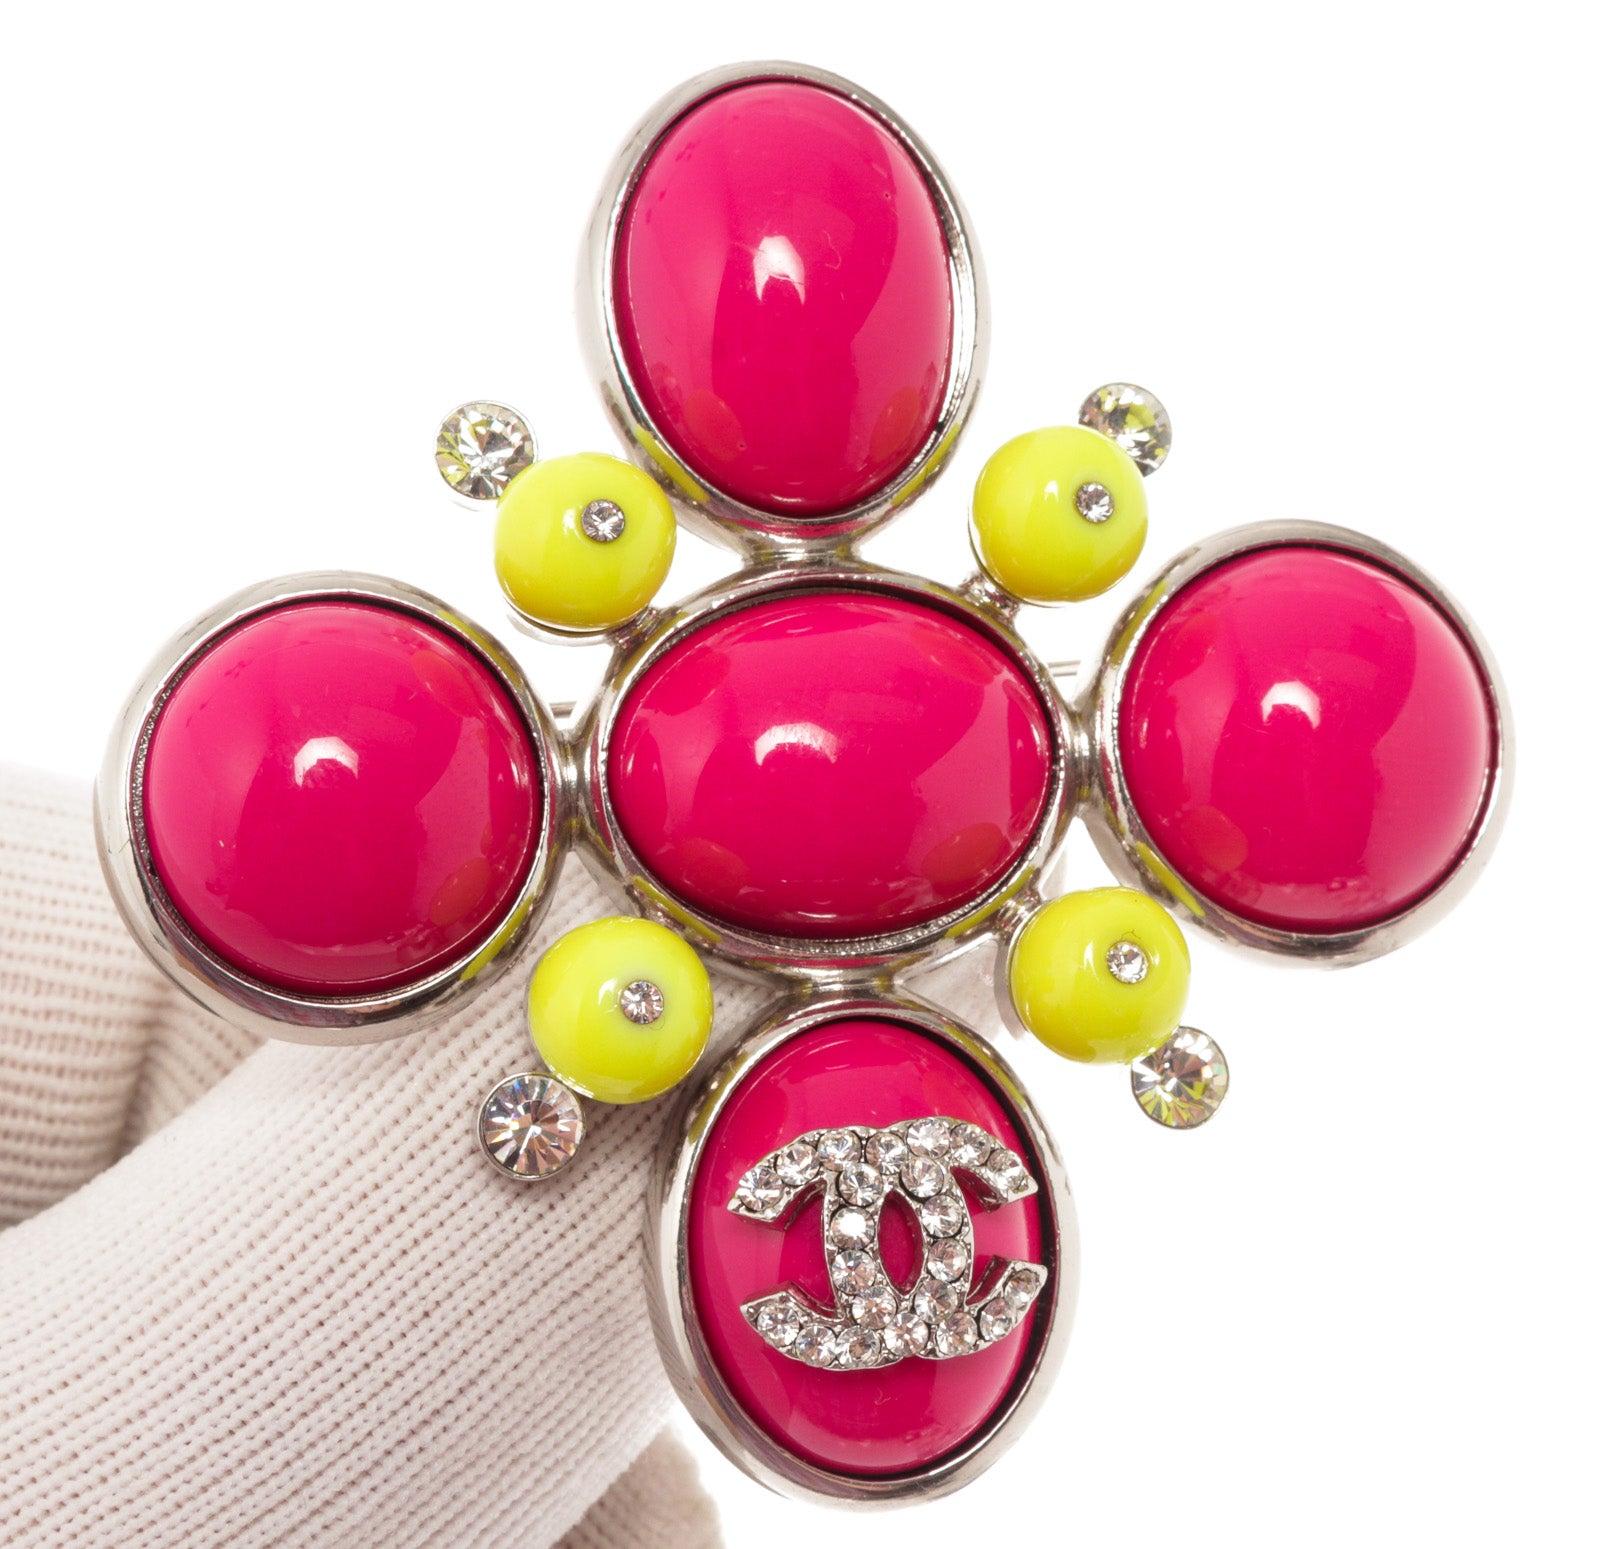 Broche Chanel avec ornements en résine et cristal rose et jaune, avec le logo CC, matériel argenté


58229MSC